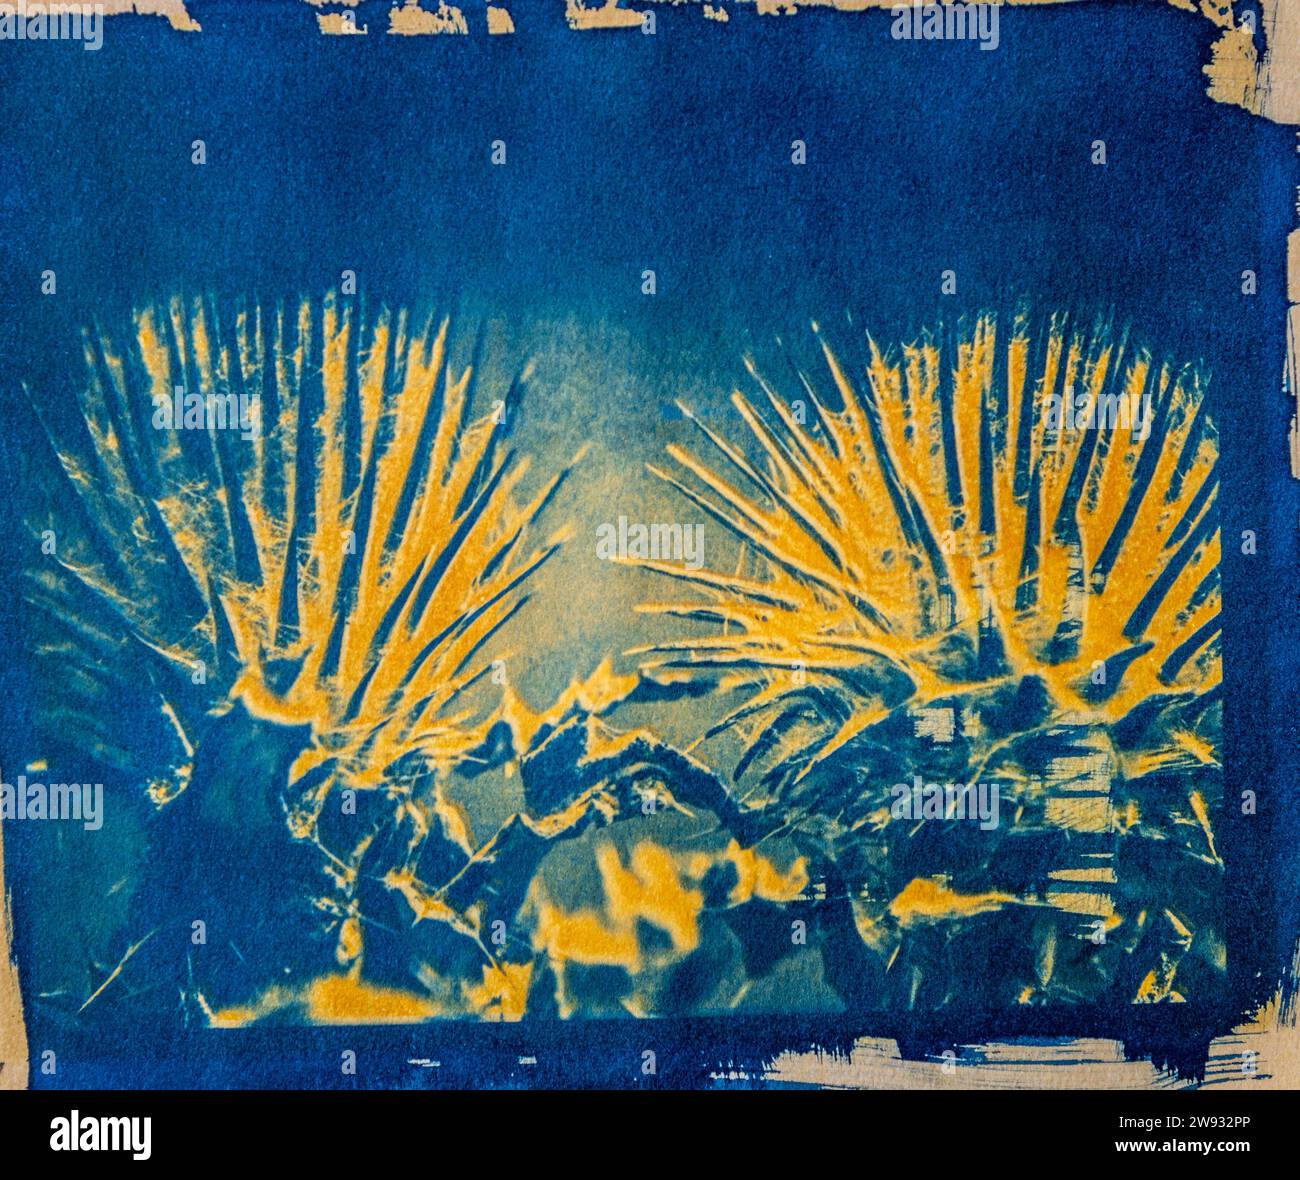 Ein handgefertigtes Bild einer Spinnennetzdistelpflanze, gedruckt mit einem alten fotografischen Verfahren namens Cyanotype, gemischt mit einem Kurkuma-Anthotypverfahren. Stockfoto